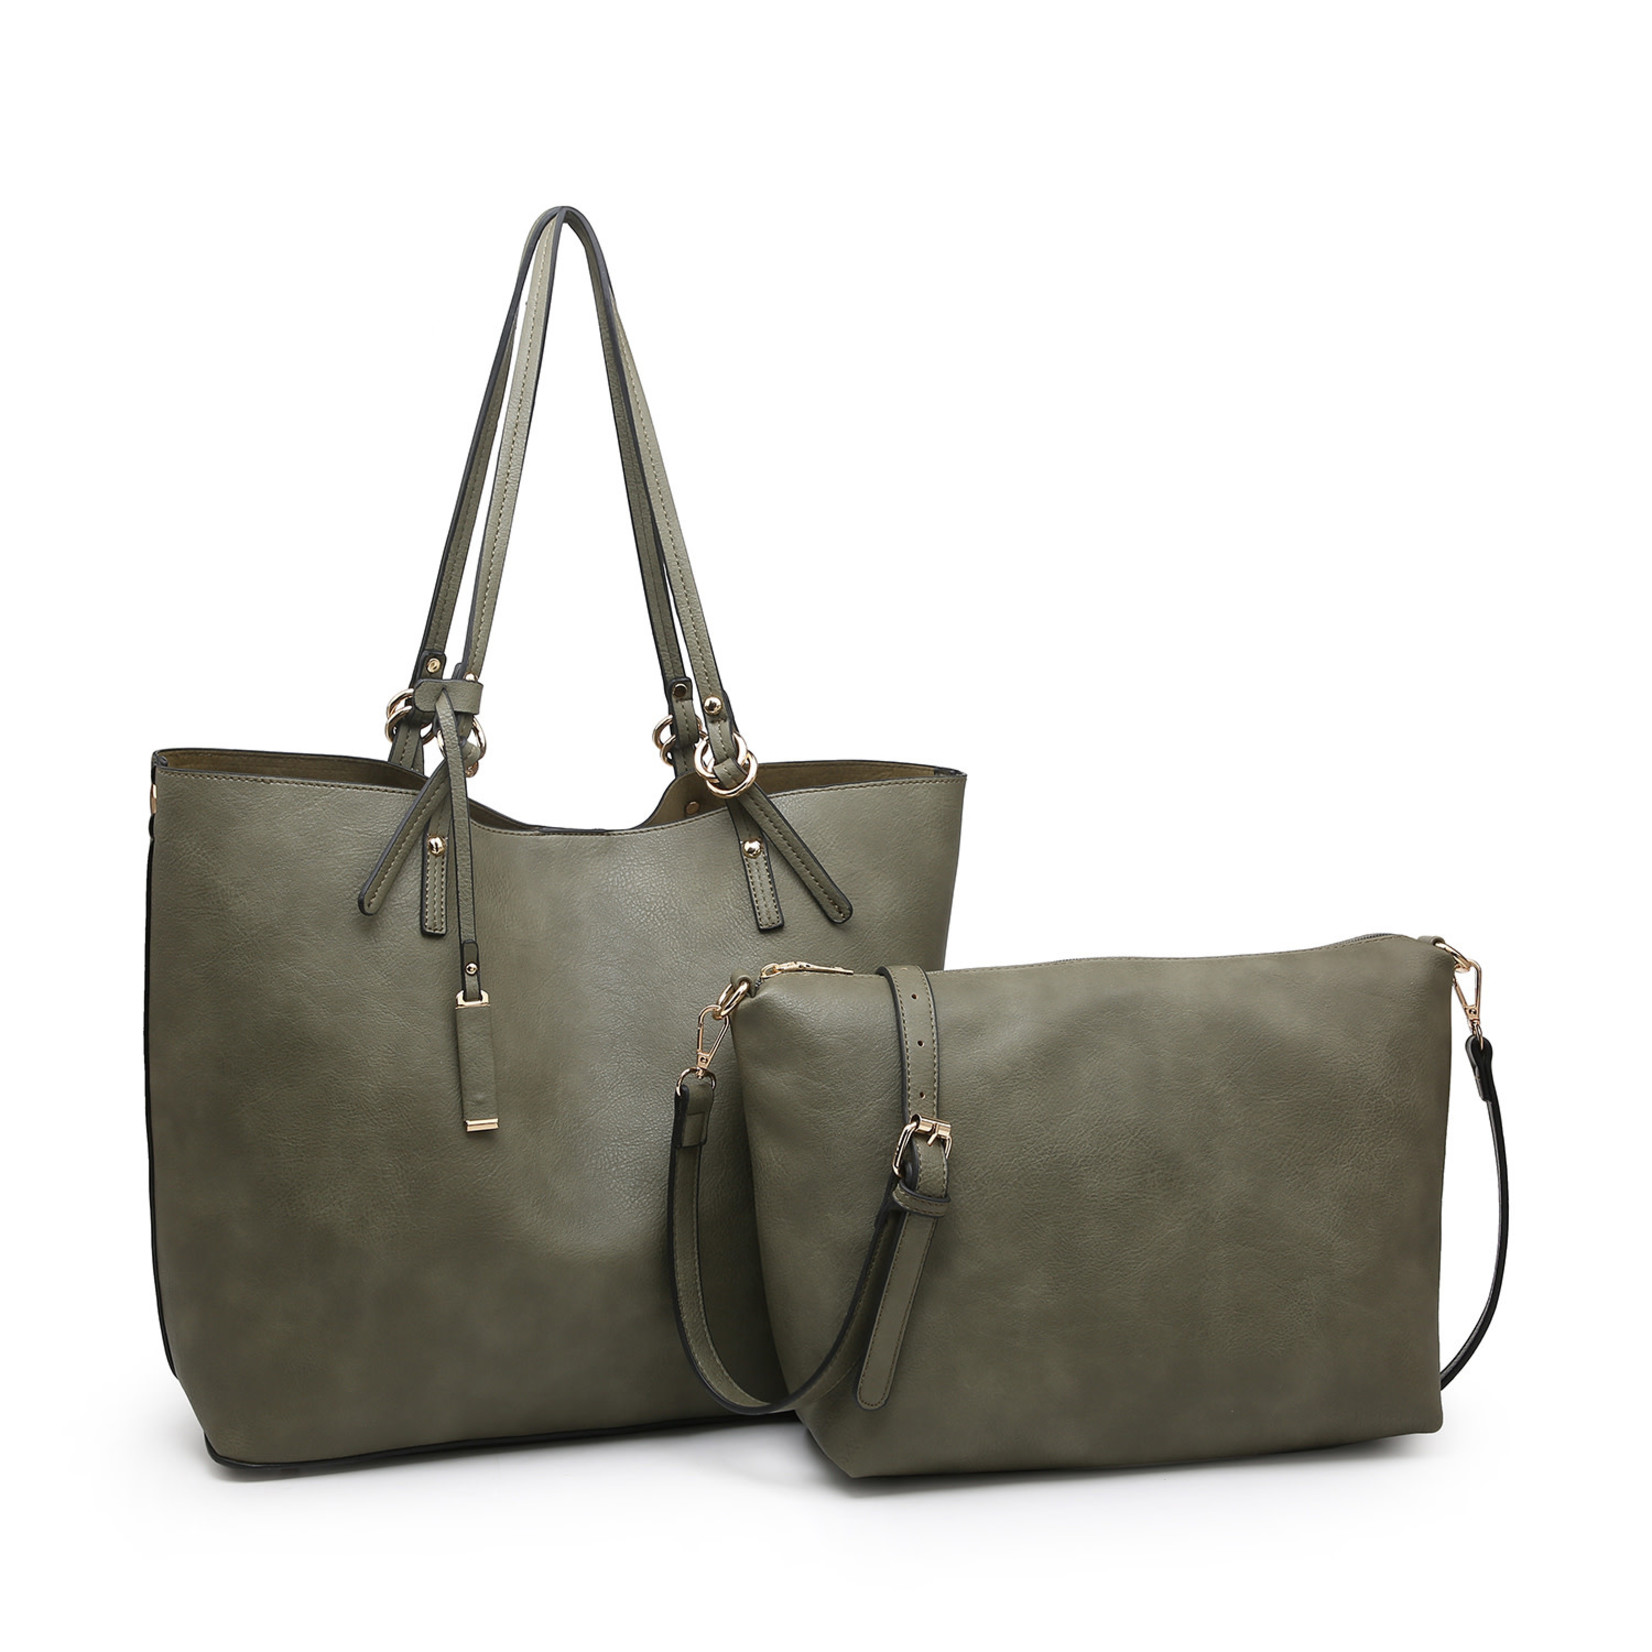 Jen & Co Iris Soft Vegan Tote w/ Bag Inside Olive (OLV)